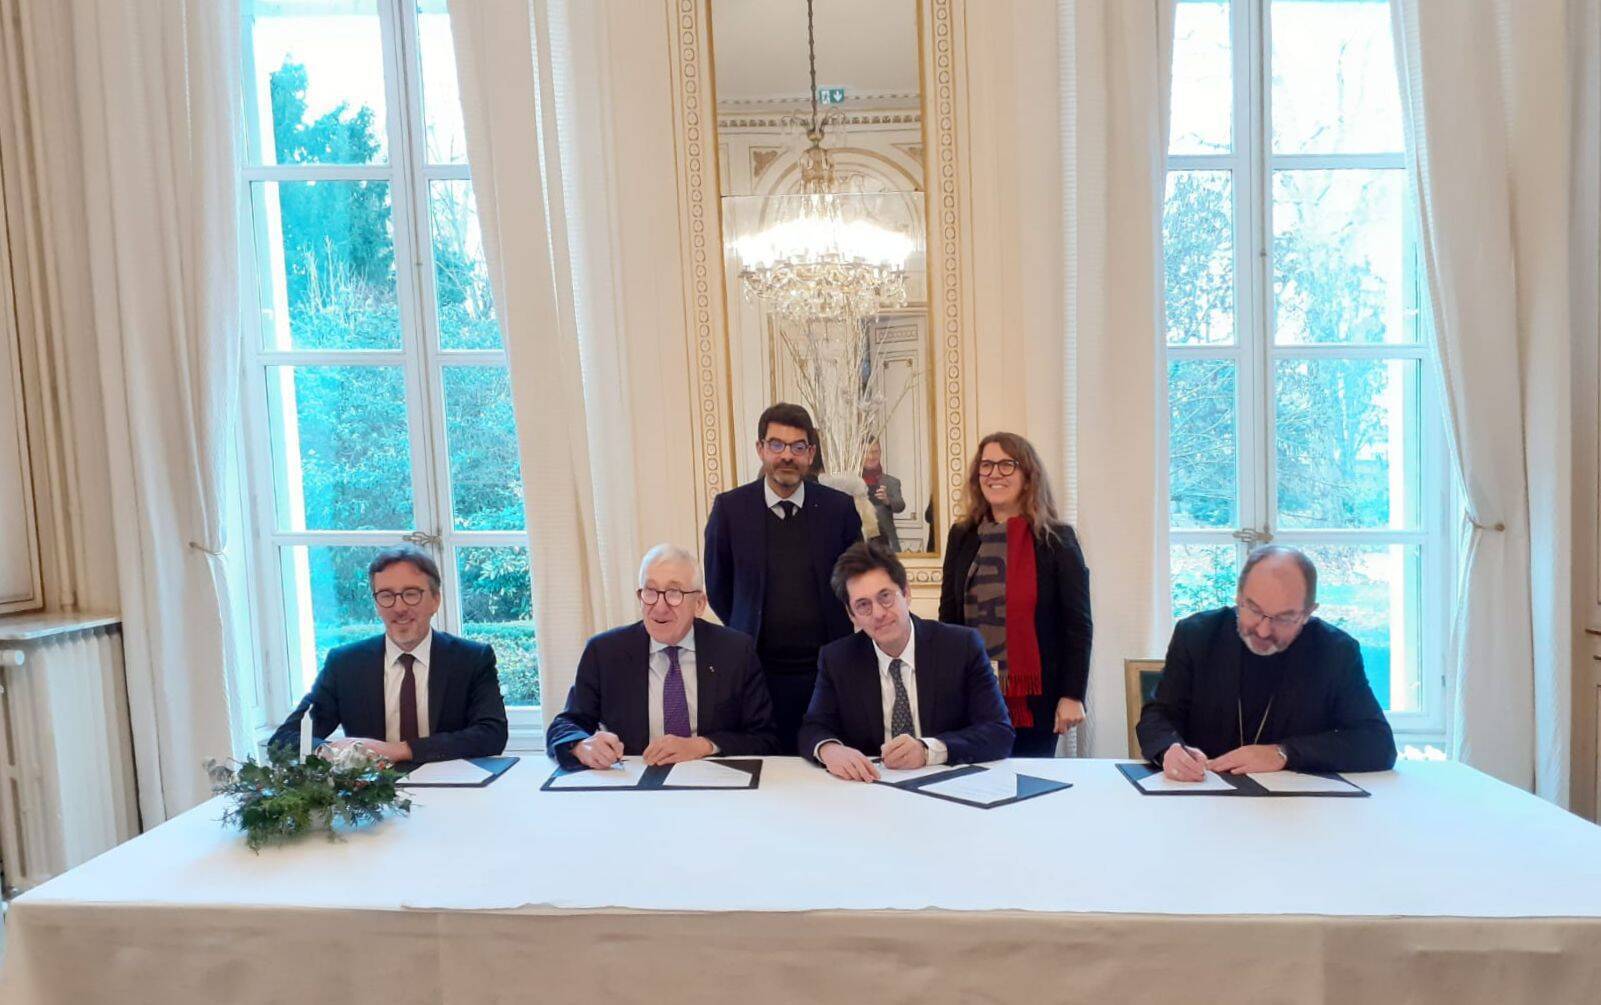 Signature d’une nouvelle convention de gestion de la cathédrale d’Amiens